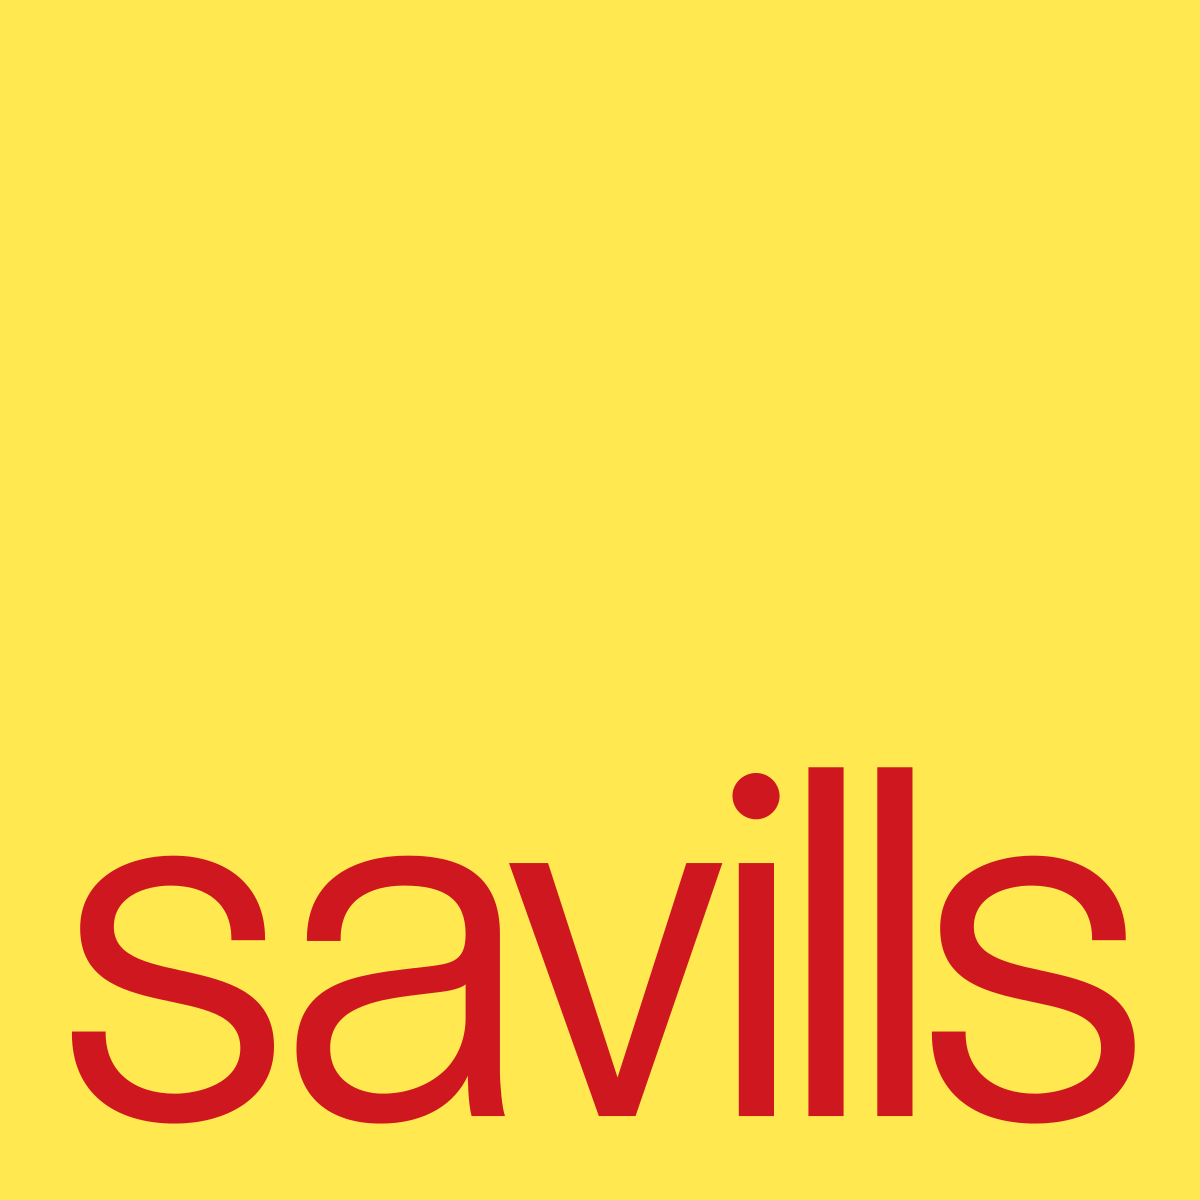 Office expansion for real estate market-leader, Savills